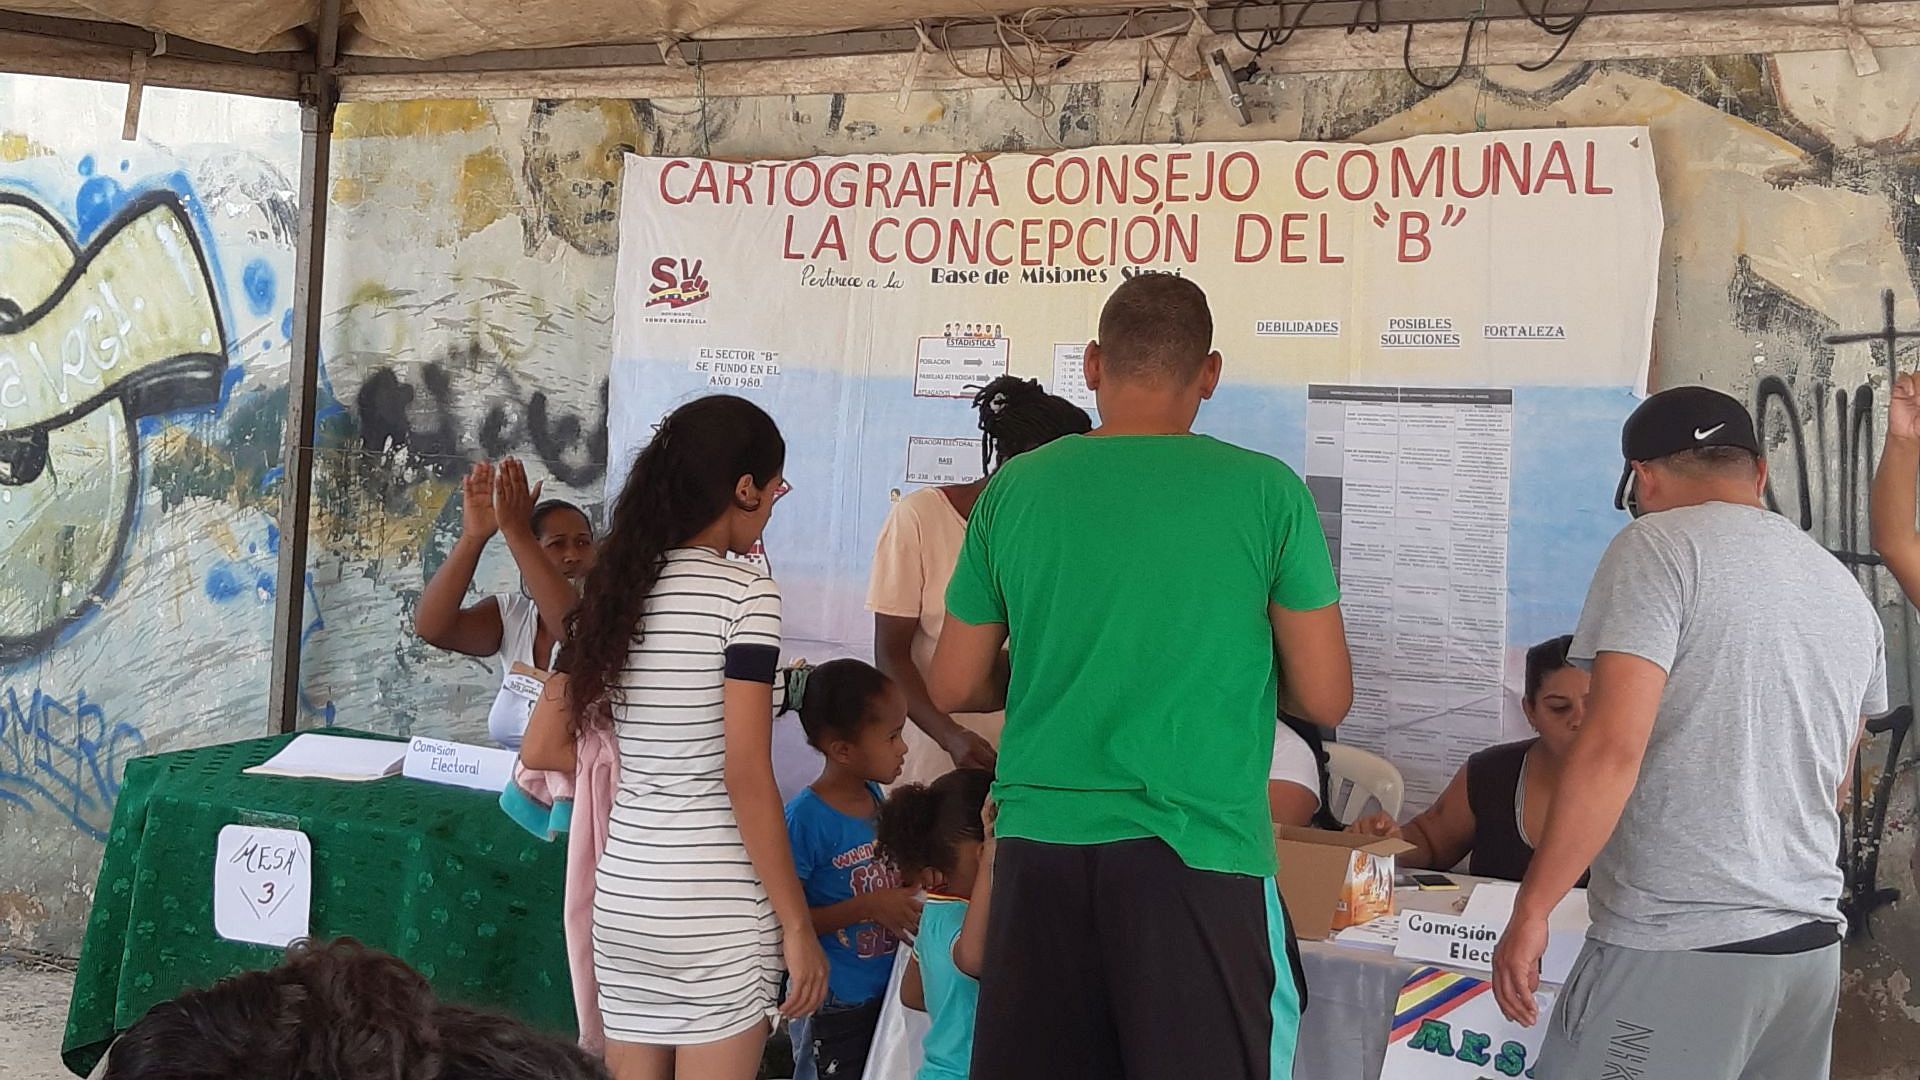 Basisdemokratisch: Wahl des Kommunalen Rats im venezolanischen Barrio Las Casitas im Juli 2022